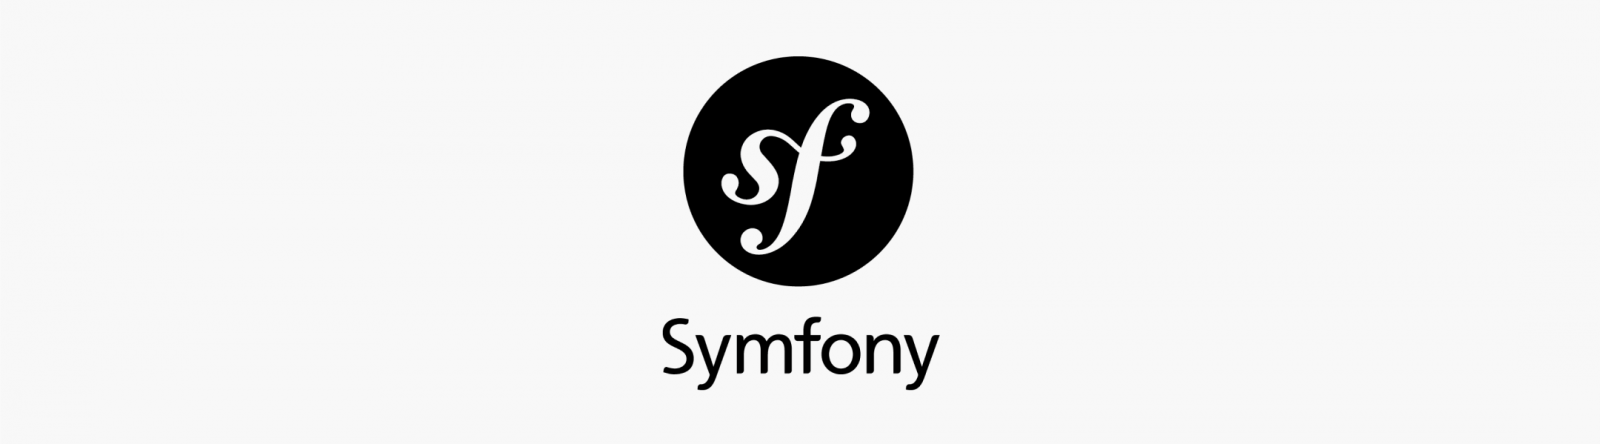 Symfony programming services